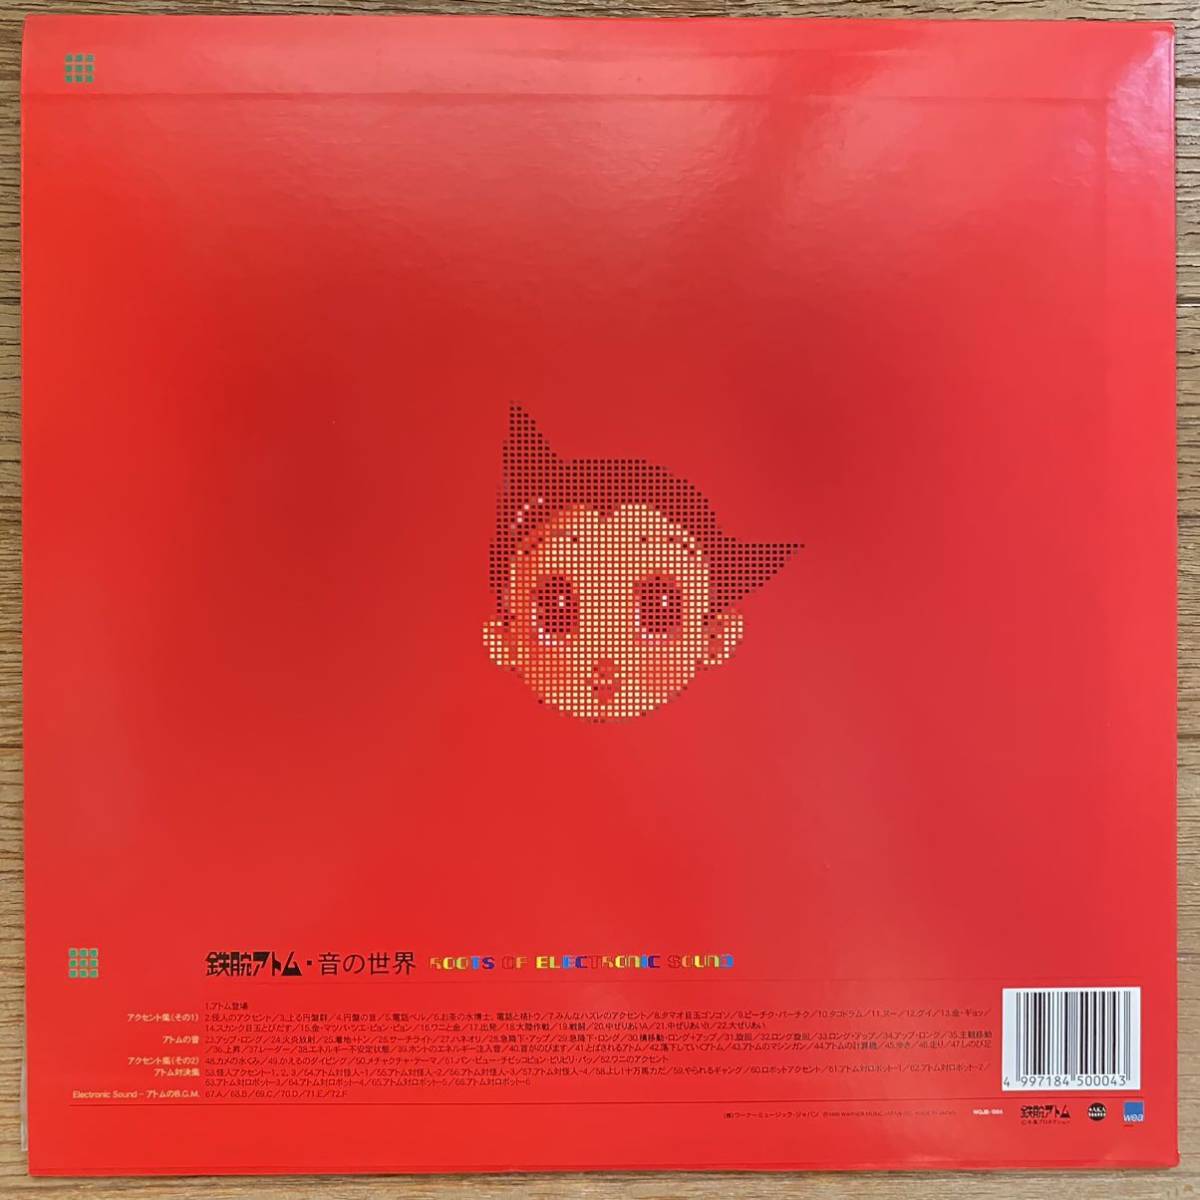 [ аналог LP* эффект звук ] Astro Boy / звук. мир / Oono сосна самец / 1998 год / рука .. насекомое /